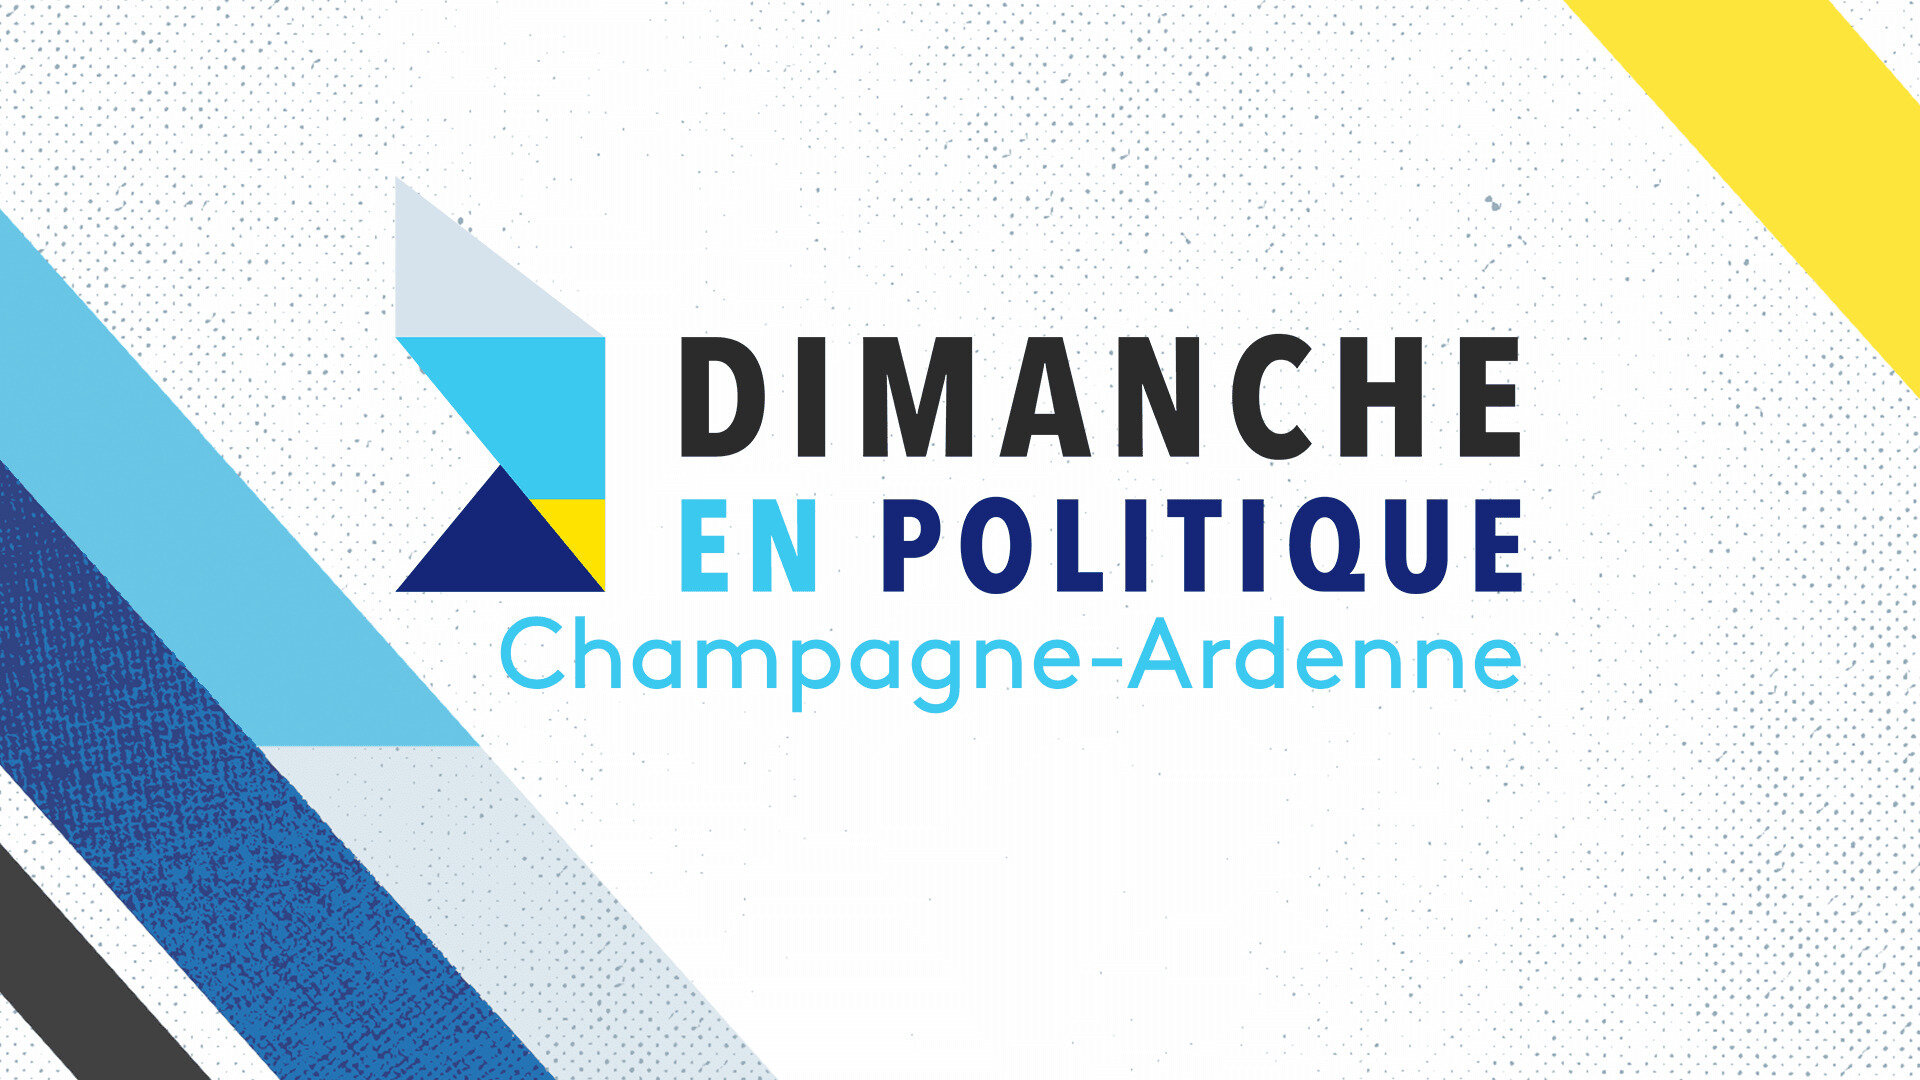 Dimanche en politique - Champagne-Ardenne : Spéciale législatives